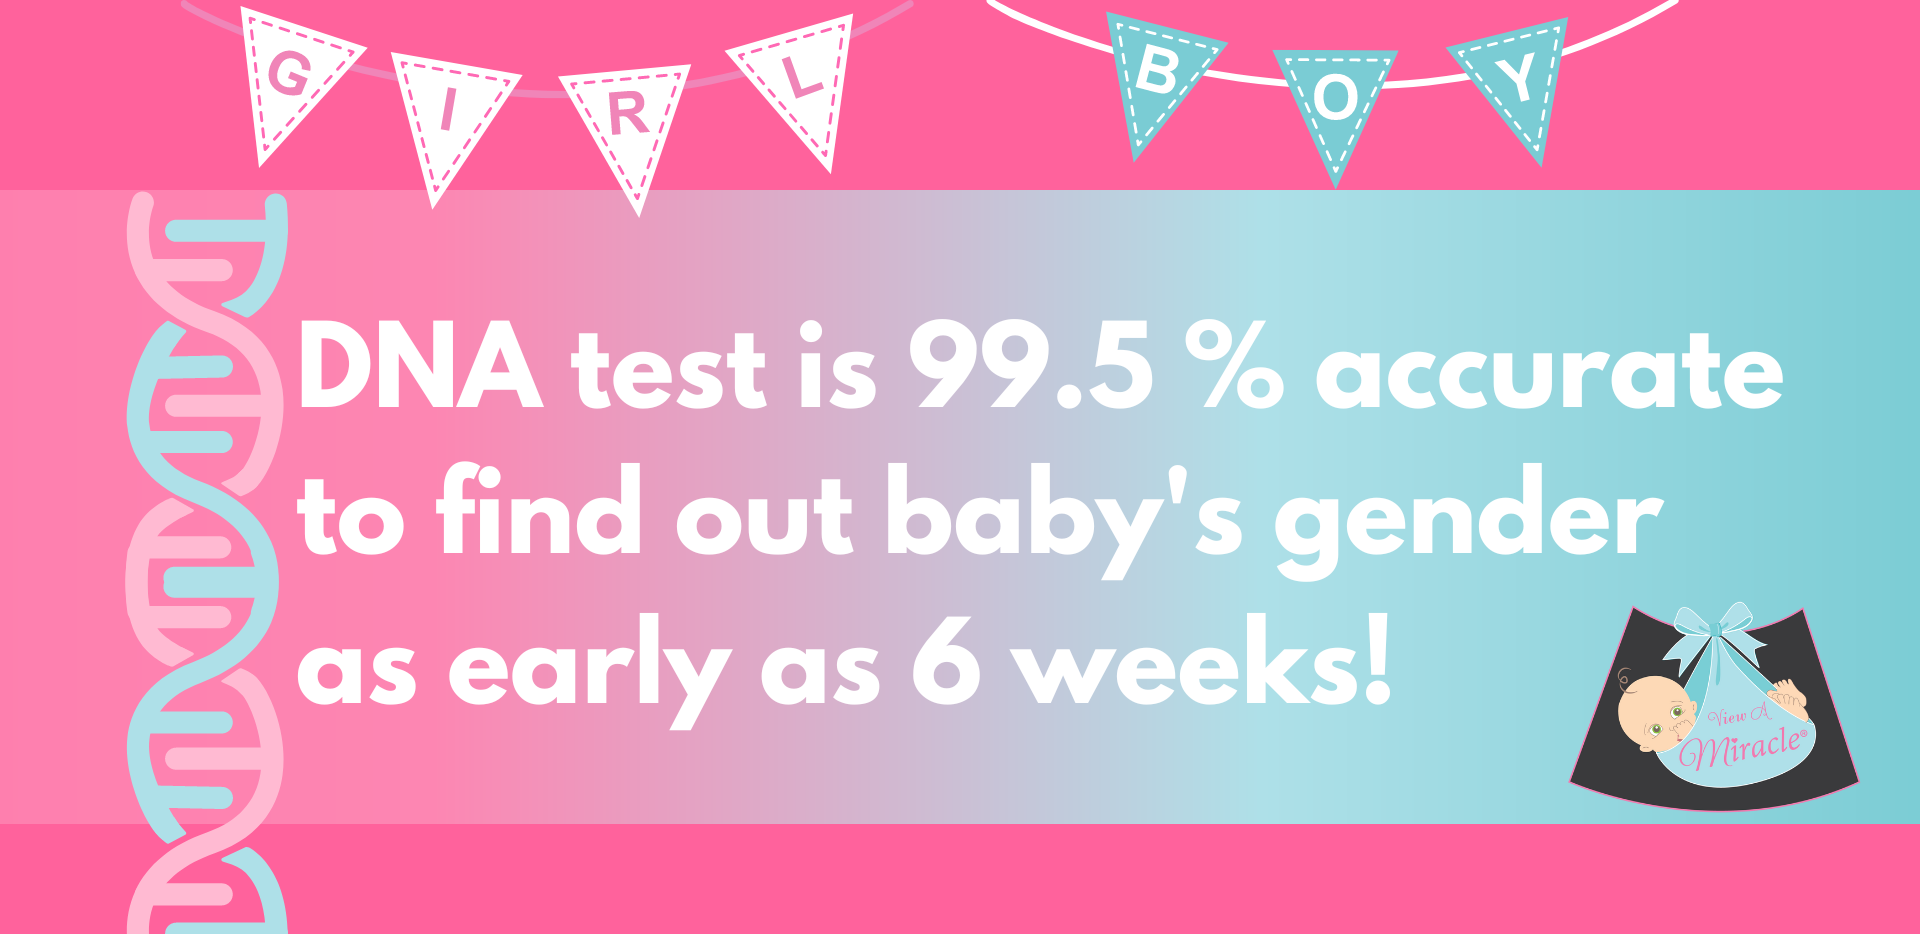 Gender DNA Blood Test - 6 Weeks 99.5% Accurate